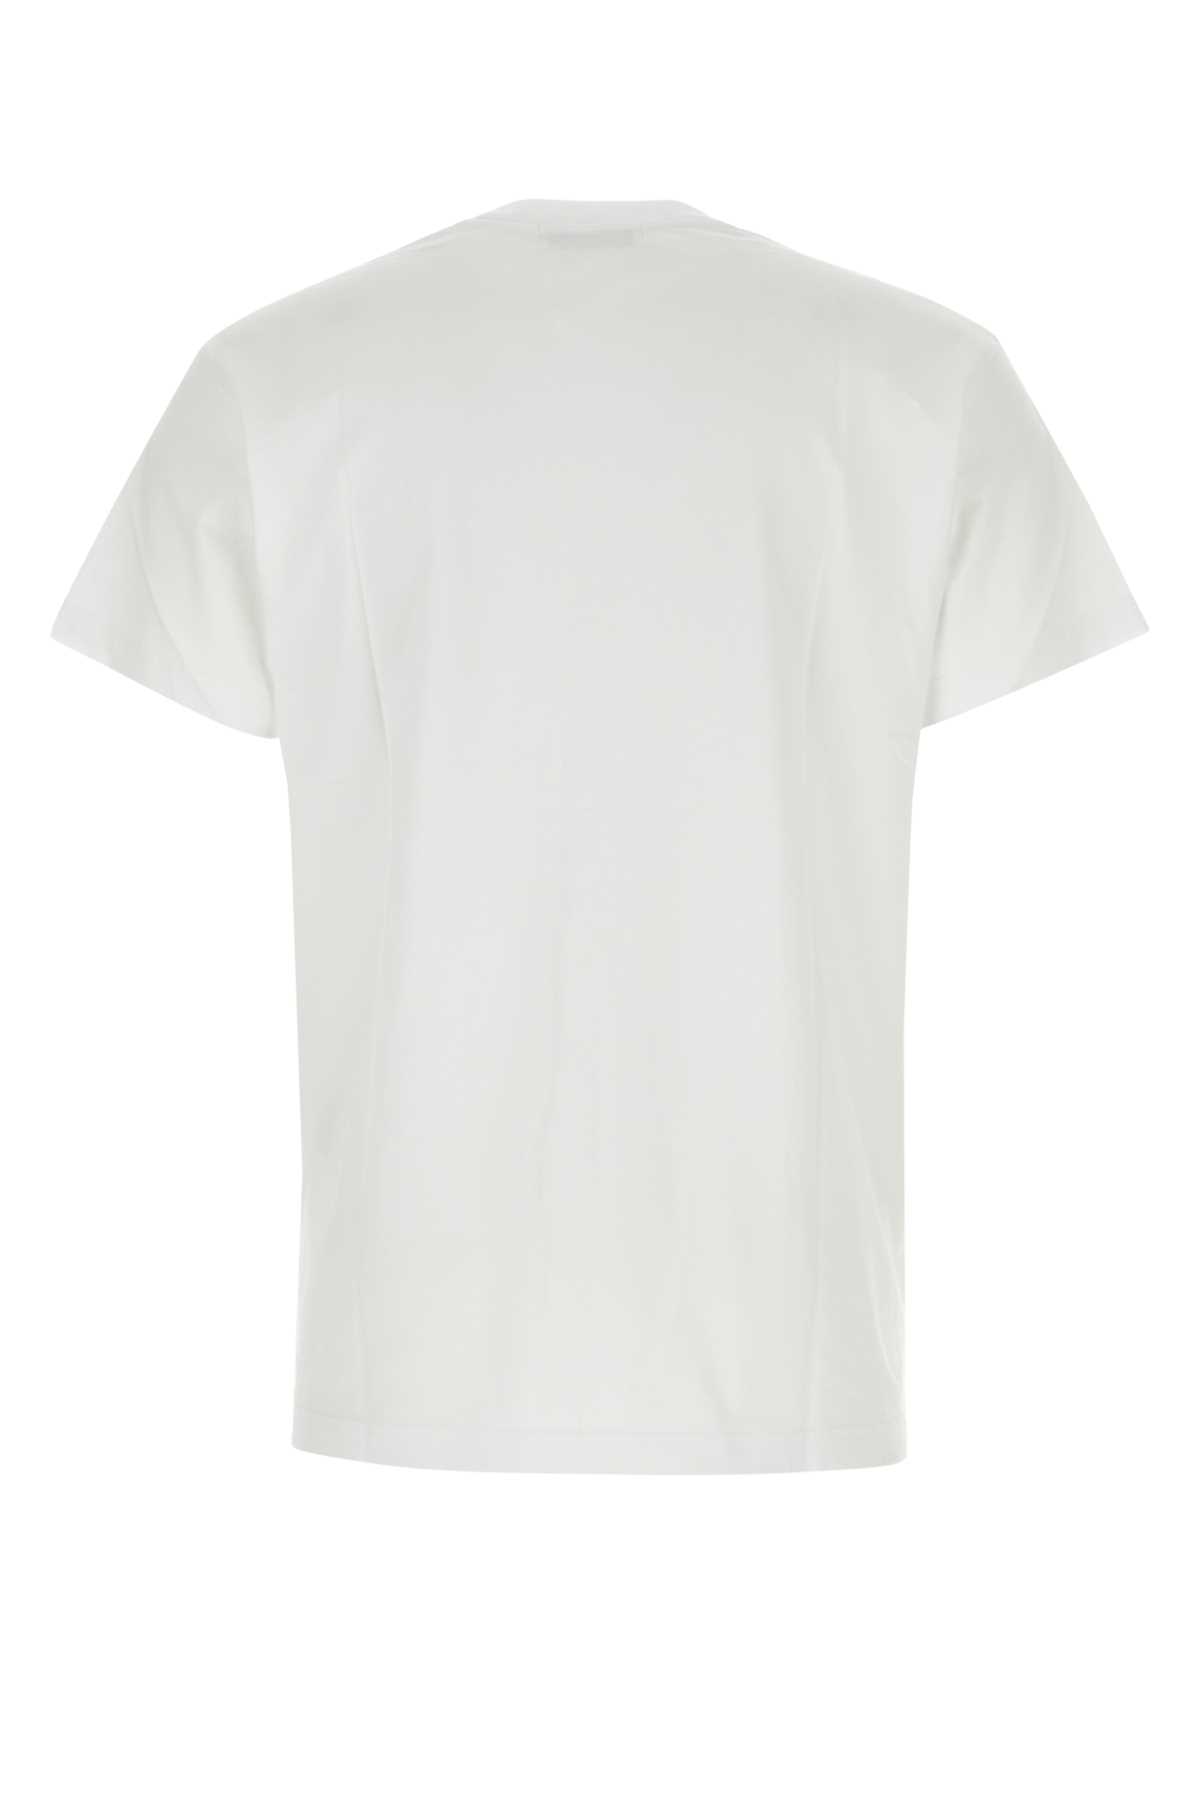 Ambush White Cotton T-shirt Set In Blanc